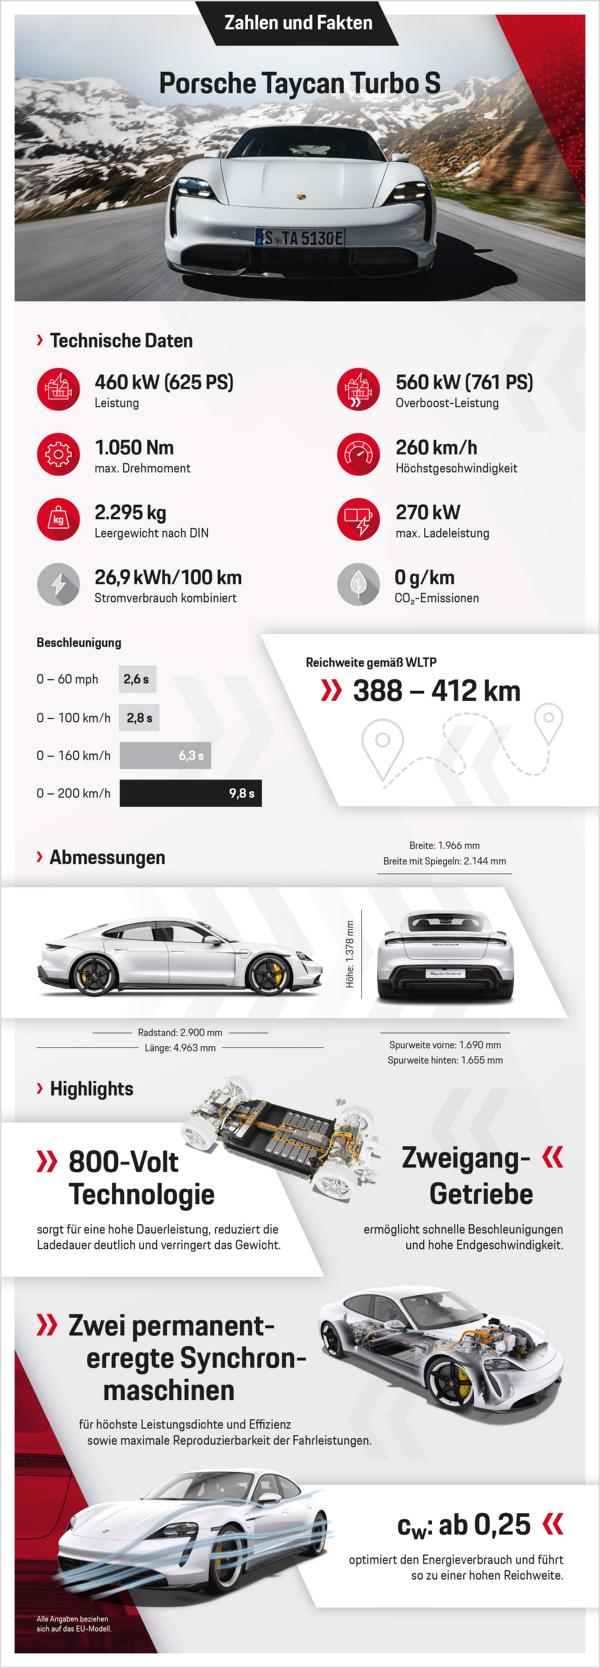 Unter Strom: Elektro-Sportwagen Porsche Taycan (2019)